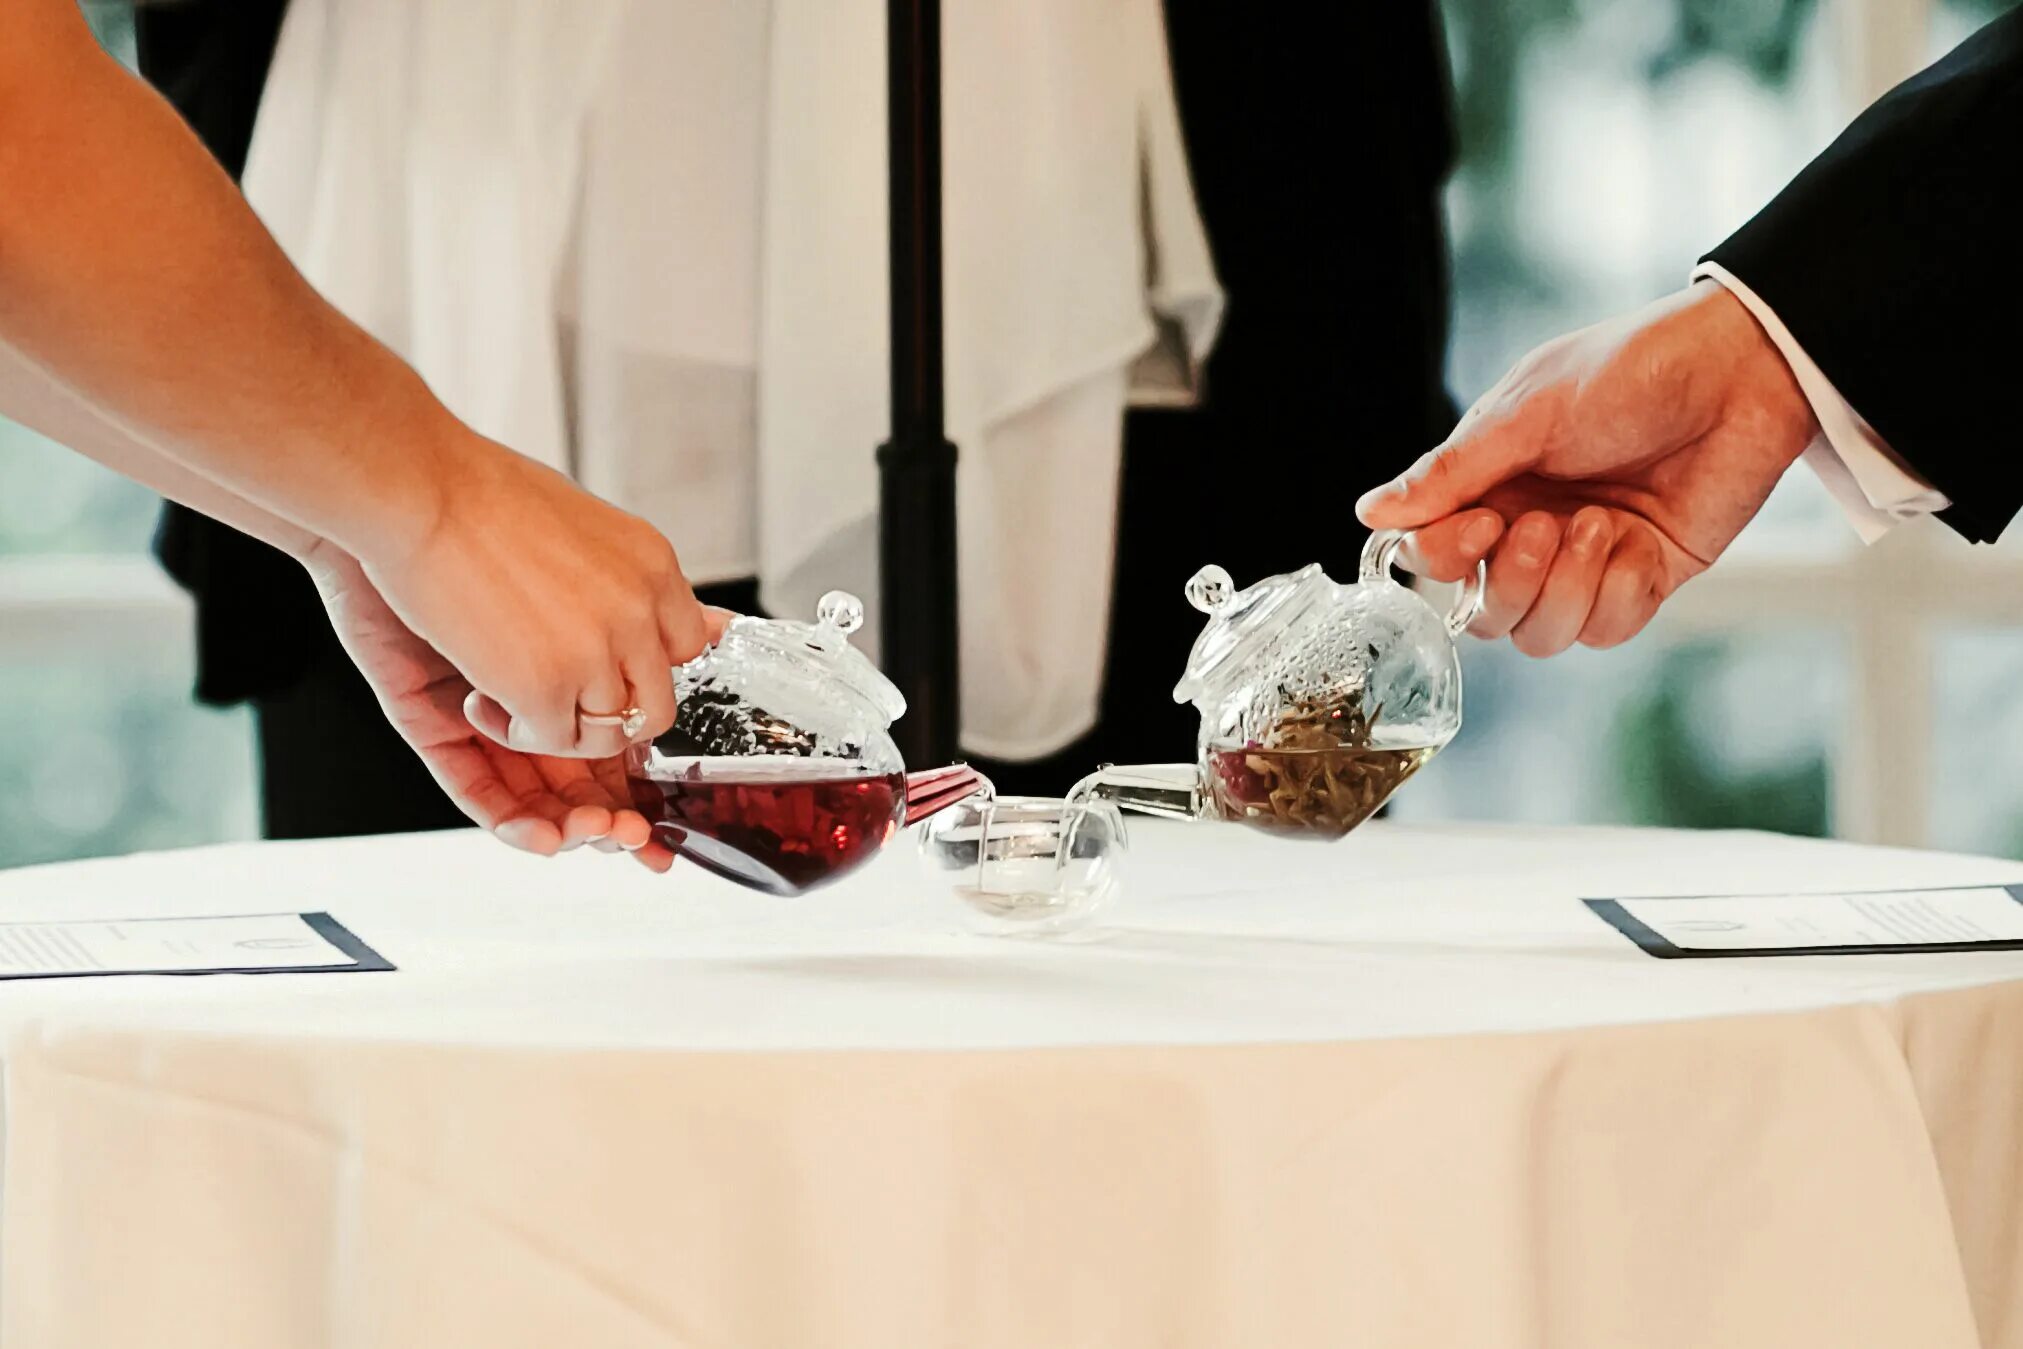 Церемония про. Свадебная чайная церемония. Чайная свадьба. Свадьба подготовка традиции. Чайная церемония в Китае на свадьбе.